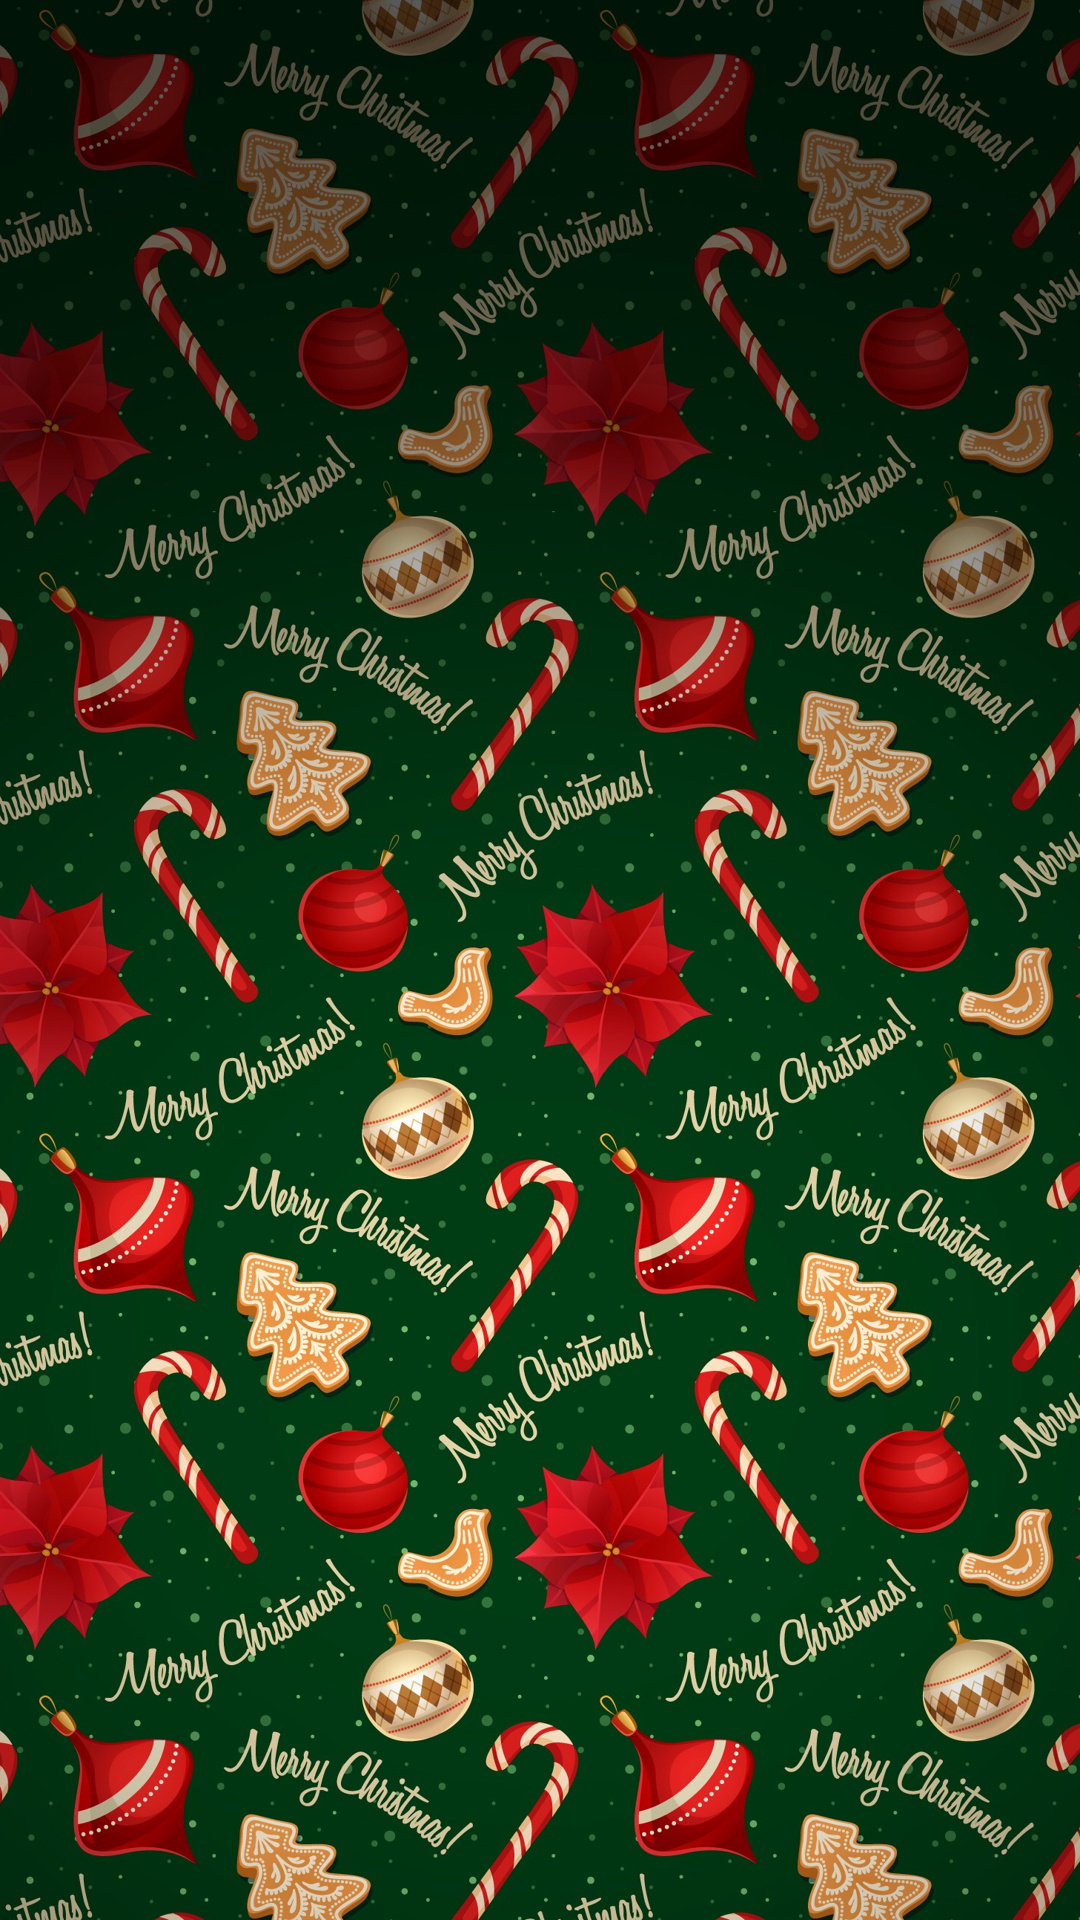 Merry_Christmas-wallpaper-10794651.jpg